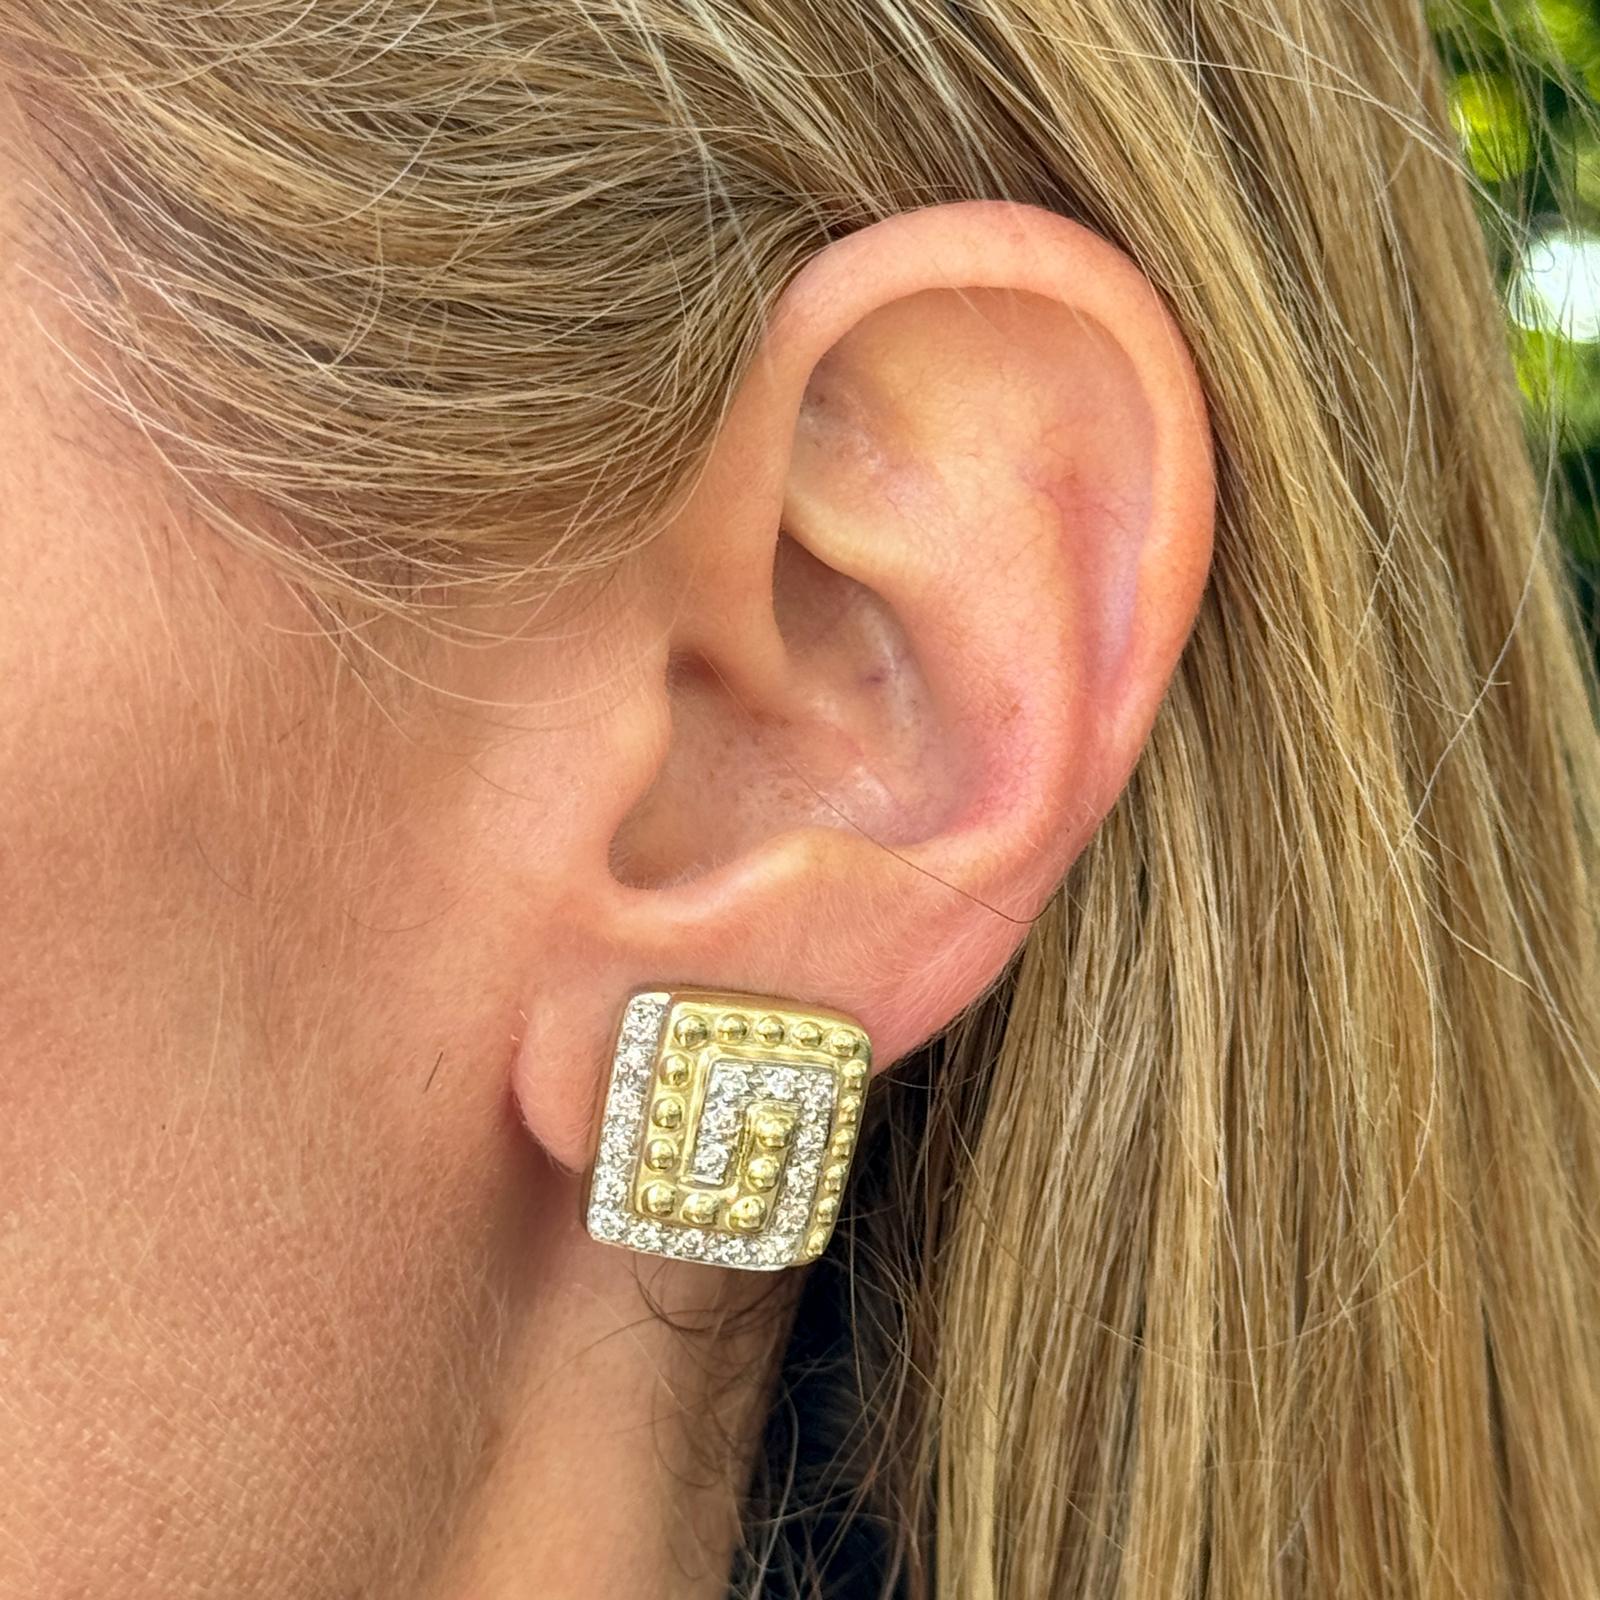 Diamantohrringe im Wirbeldesign aus 14 Karat Gelbgold. Die Ohrringe sind mit 32 runden Diamanten im Brillantschliff mit einem Gesamtgewicht von ca. 0,75 Karat versehen, die in der Farbe H-I und der Reinheit VS2-SI1 eingestuft sind. Die quadratischen